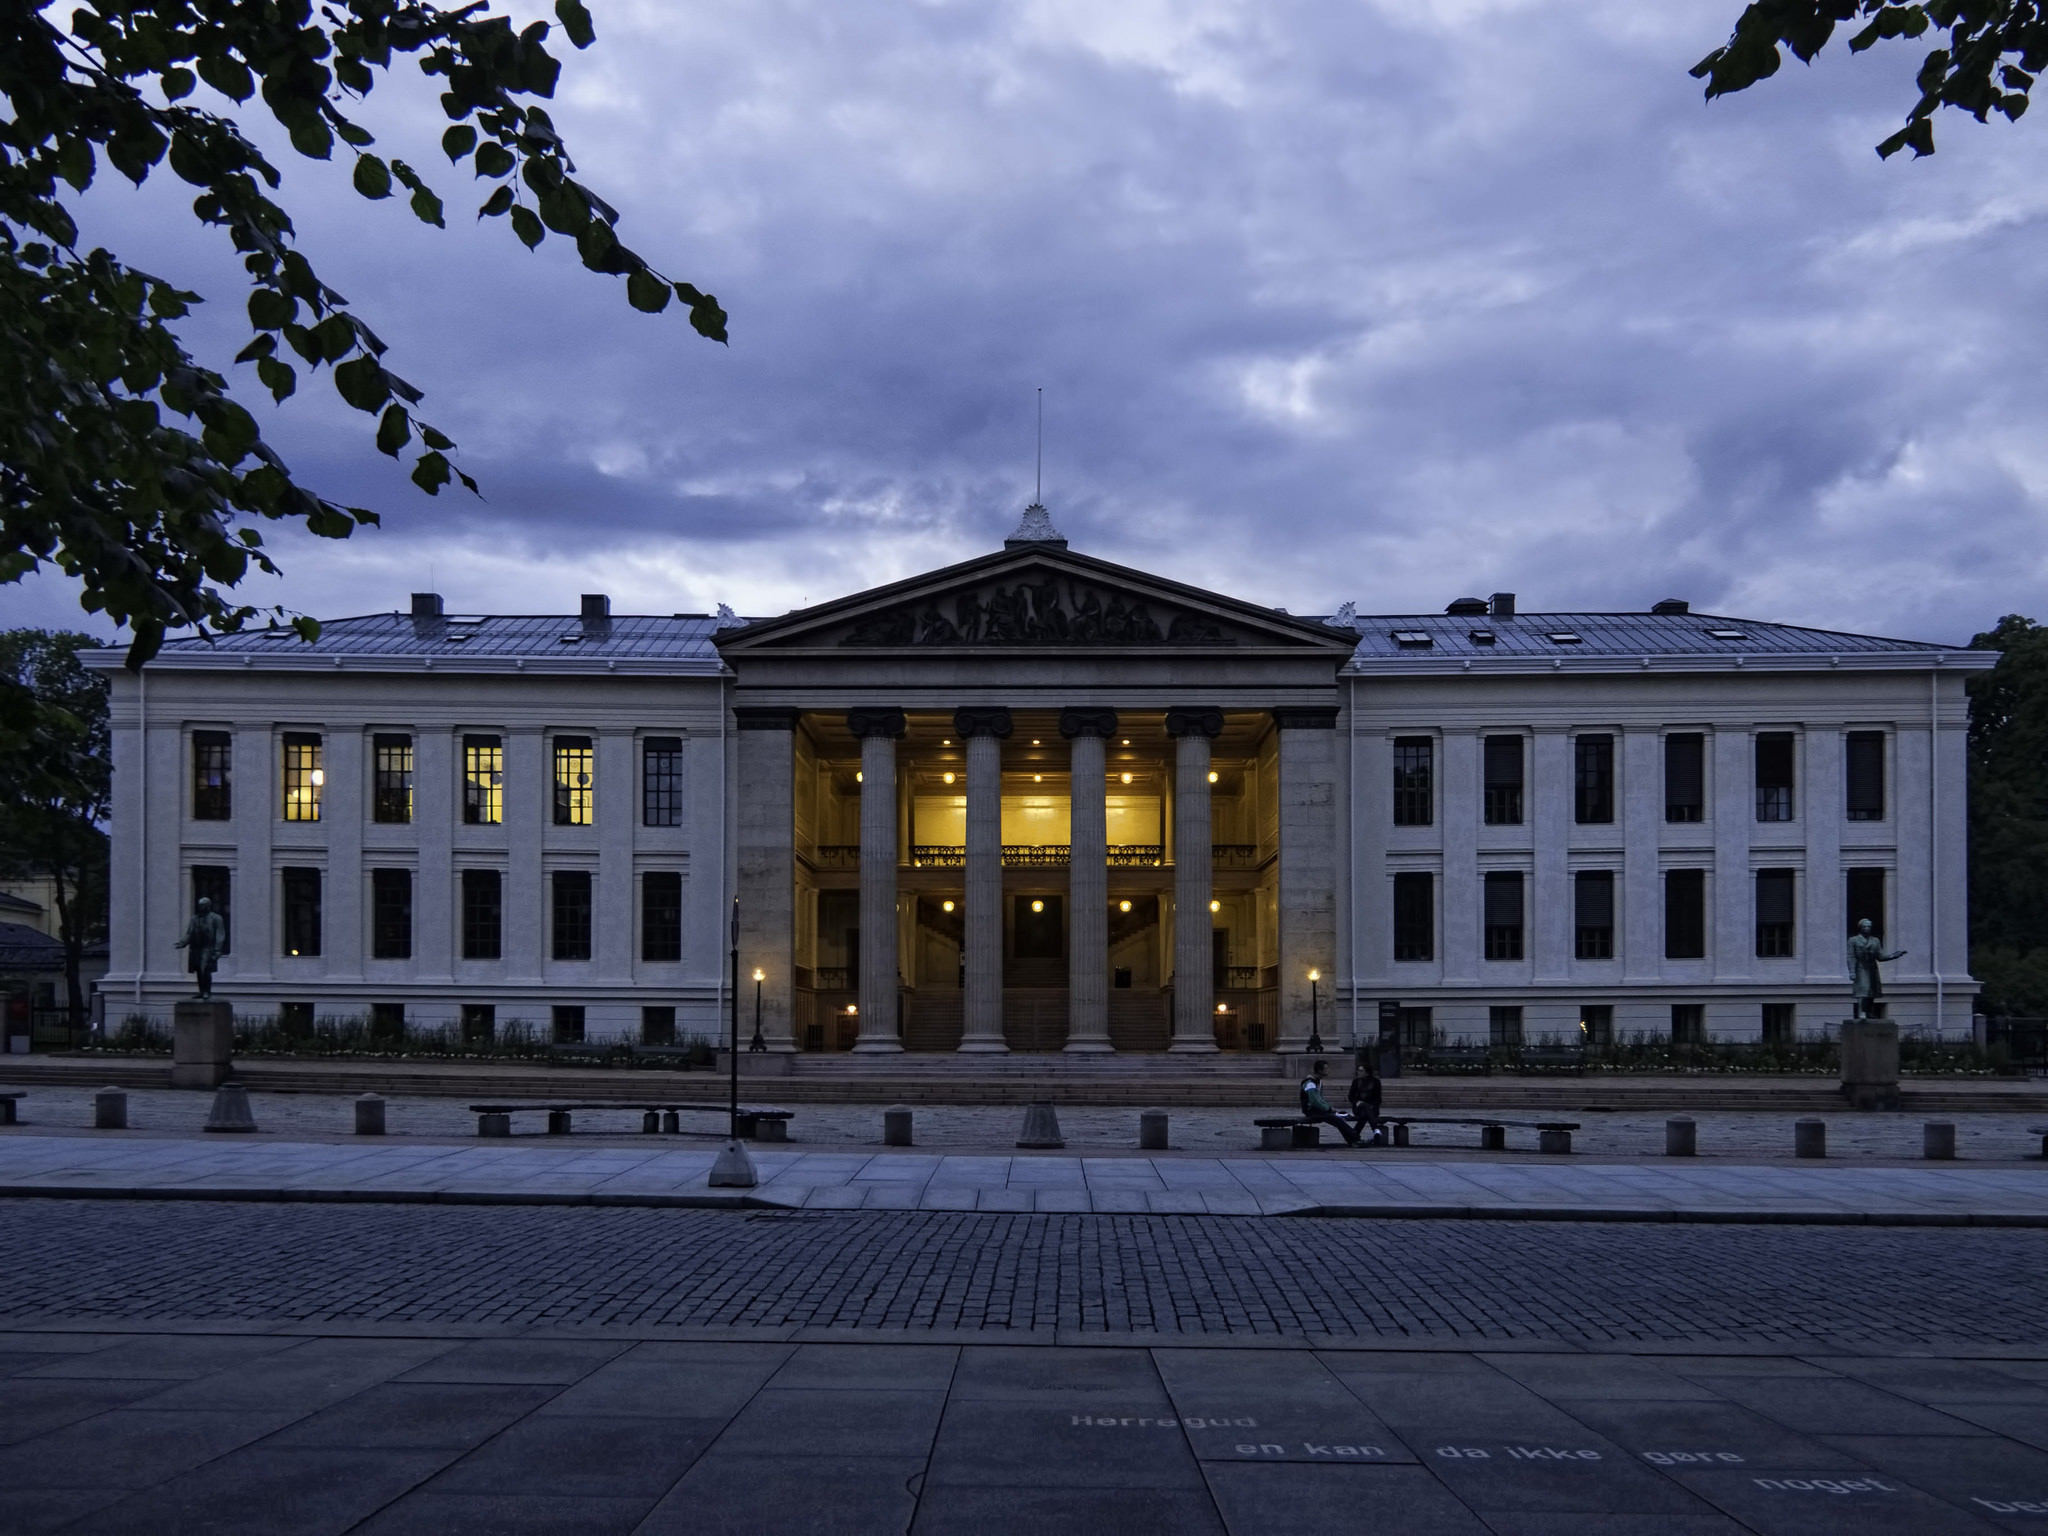 Ti kvinnelige studenter ved Universitetet i Oslo, her representert ved juridisk fakultet, ble intervjuet i denne studien. Foto: Dan Lundberg/Flickr